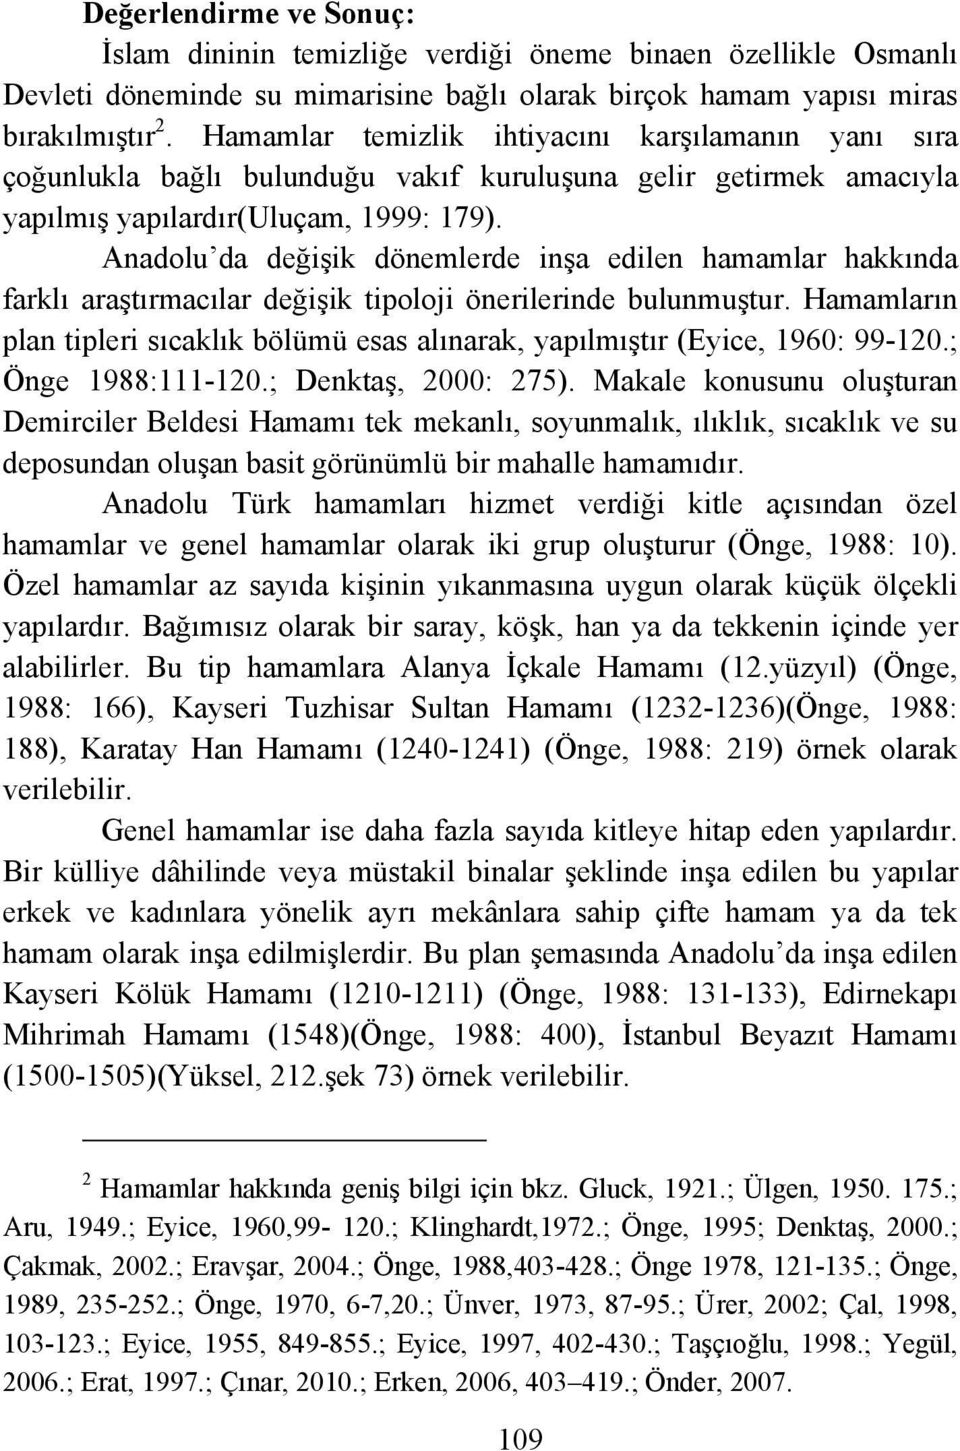 Anadolu da değişik dönemlerde inşa edilen hamamlar hakkında farklı araştırmacılar değişik tipoloji önerilerinde bulunmuştur.